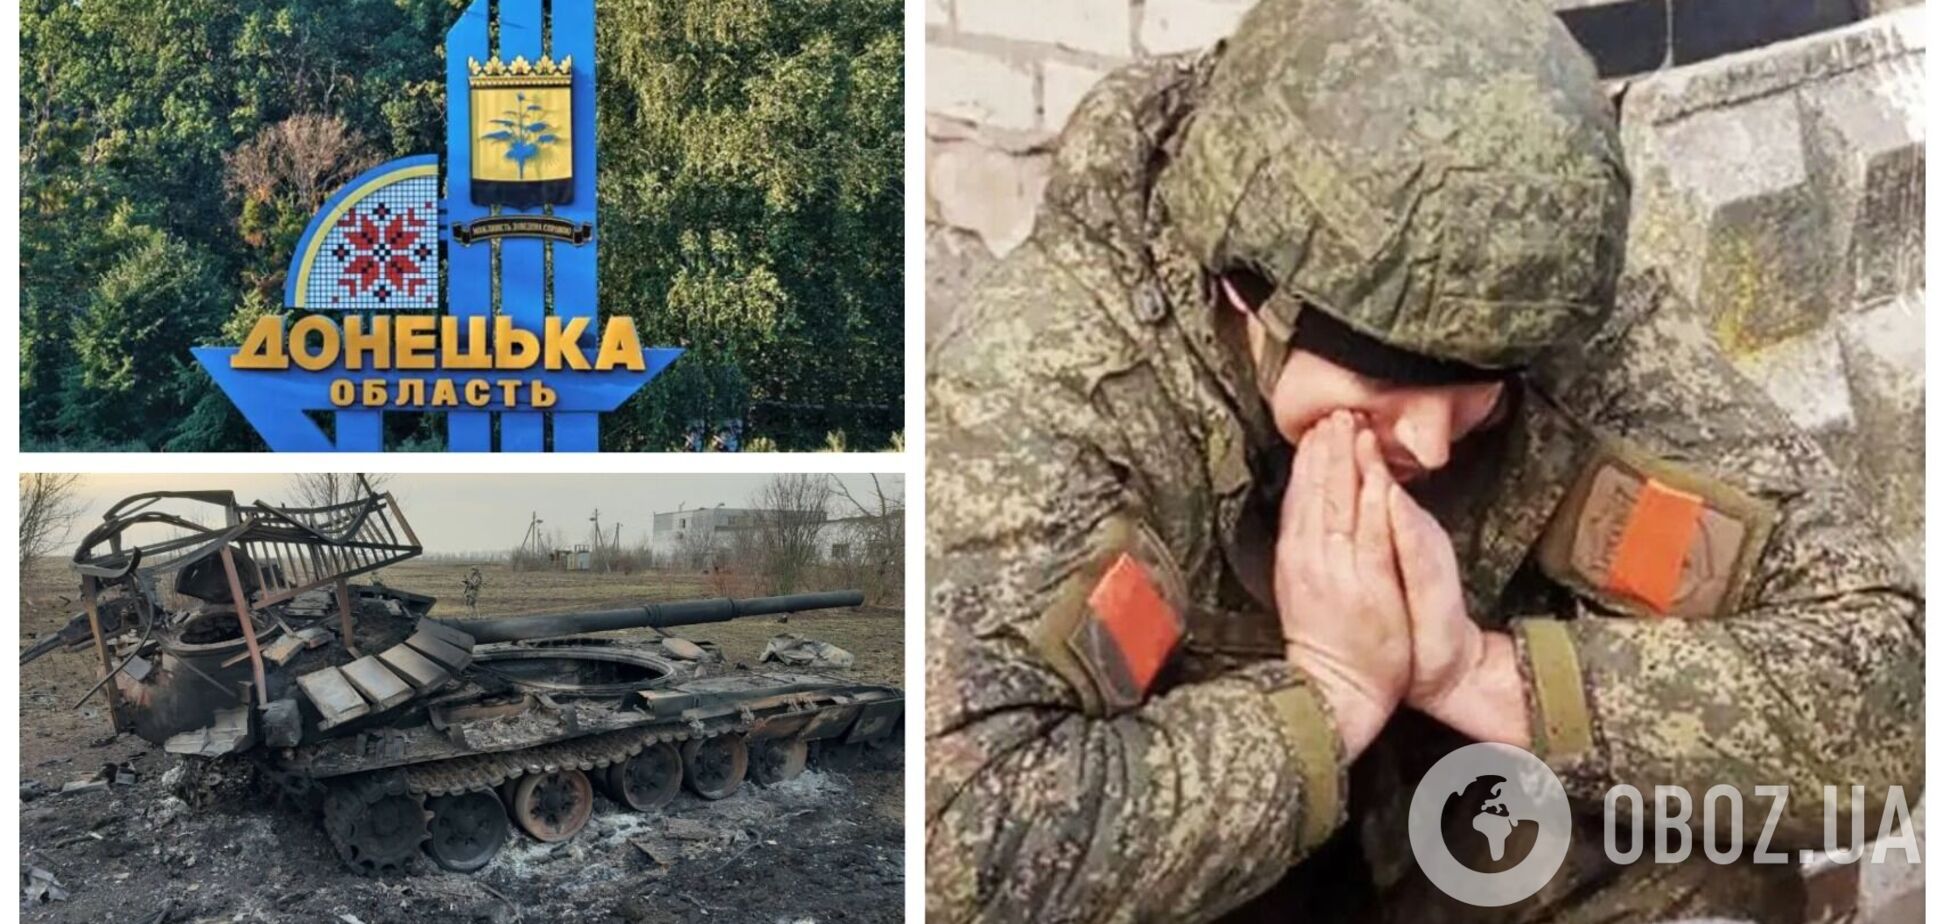 'Додому збираюся': окупант, який перебуває на Донецькому напрямку, поскаржився на потужний натиск ЗСУ. Відео 